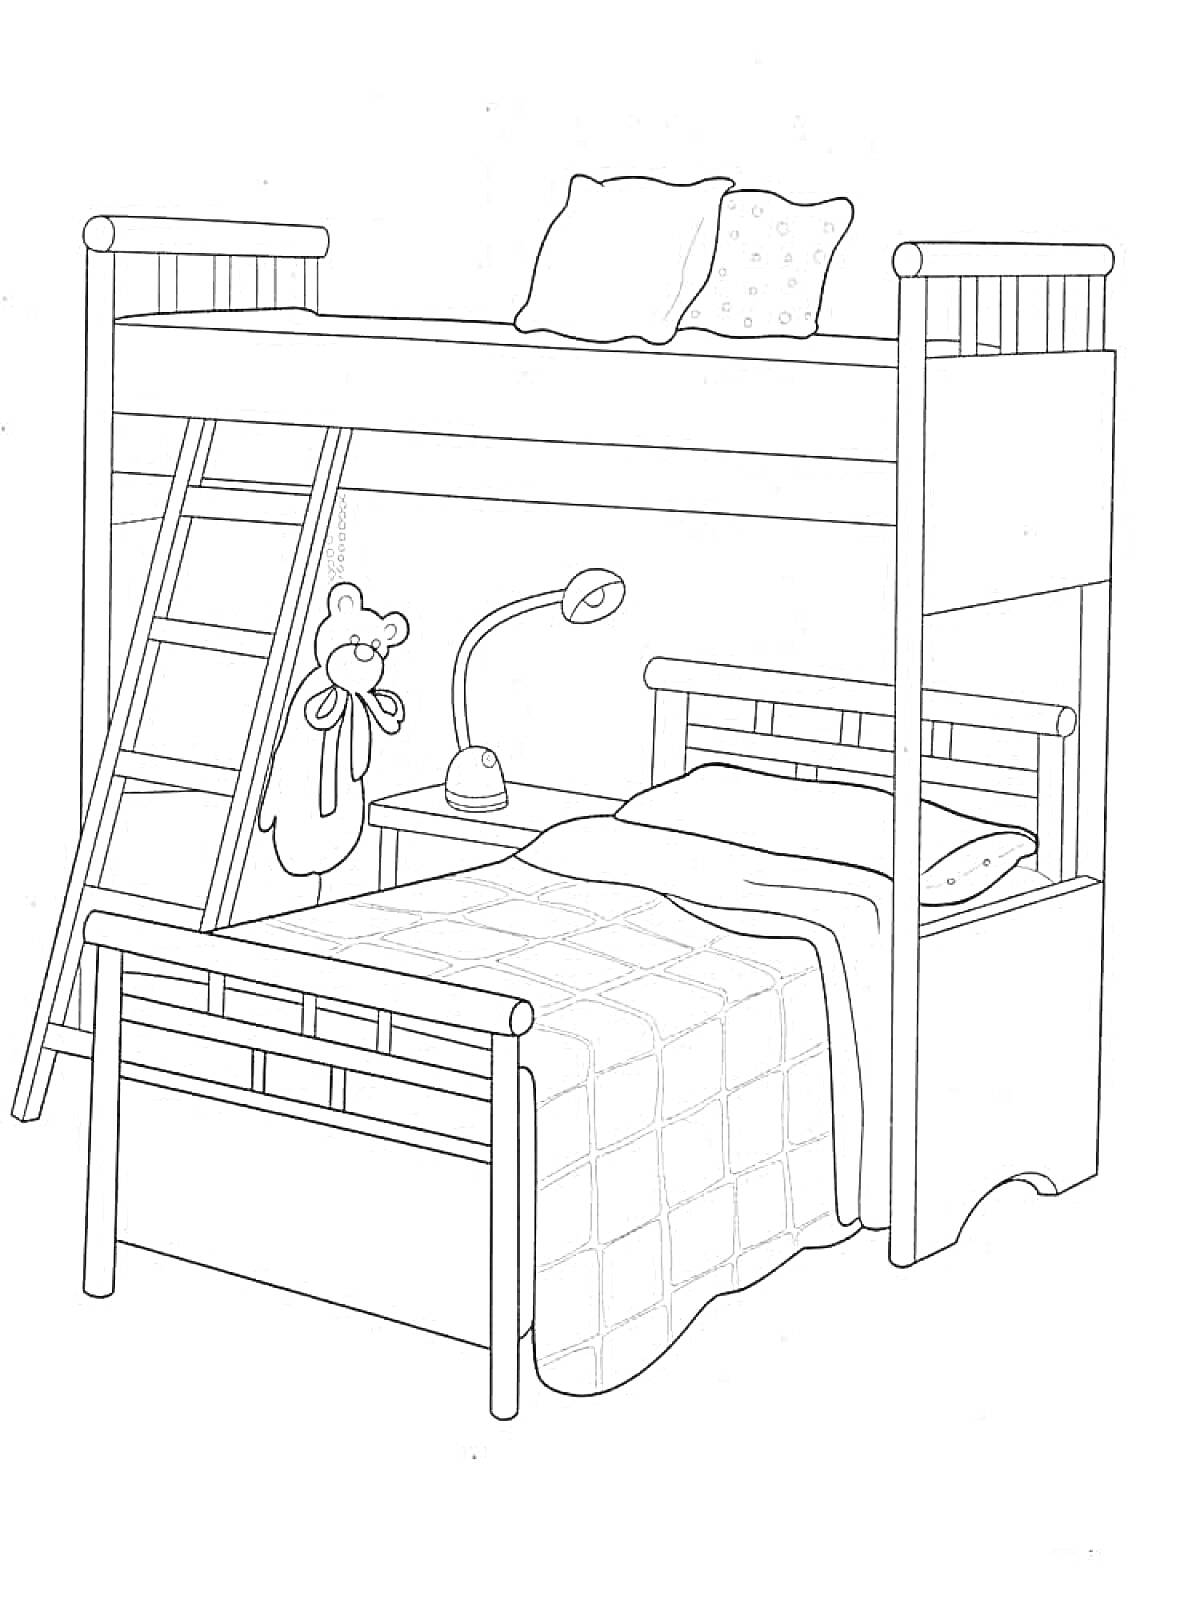 Раскраска Двухъярусная кровать с лестницей, столом, лампой, двумя подушками и игрушкой